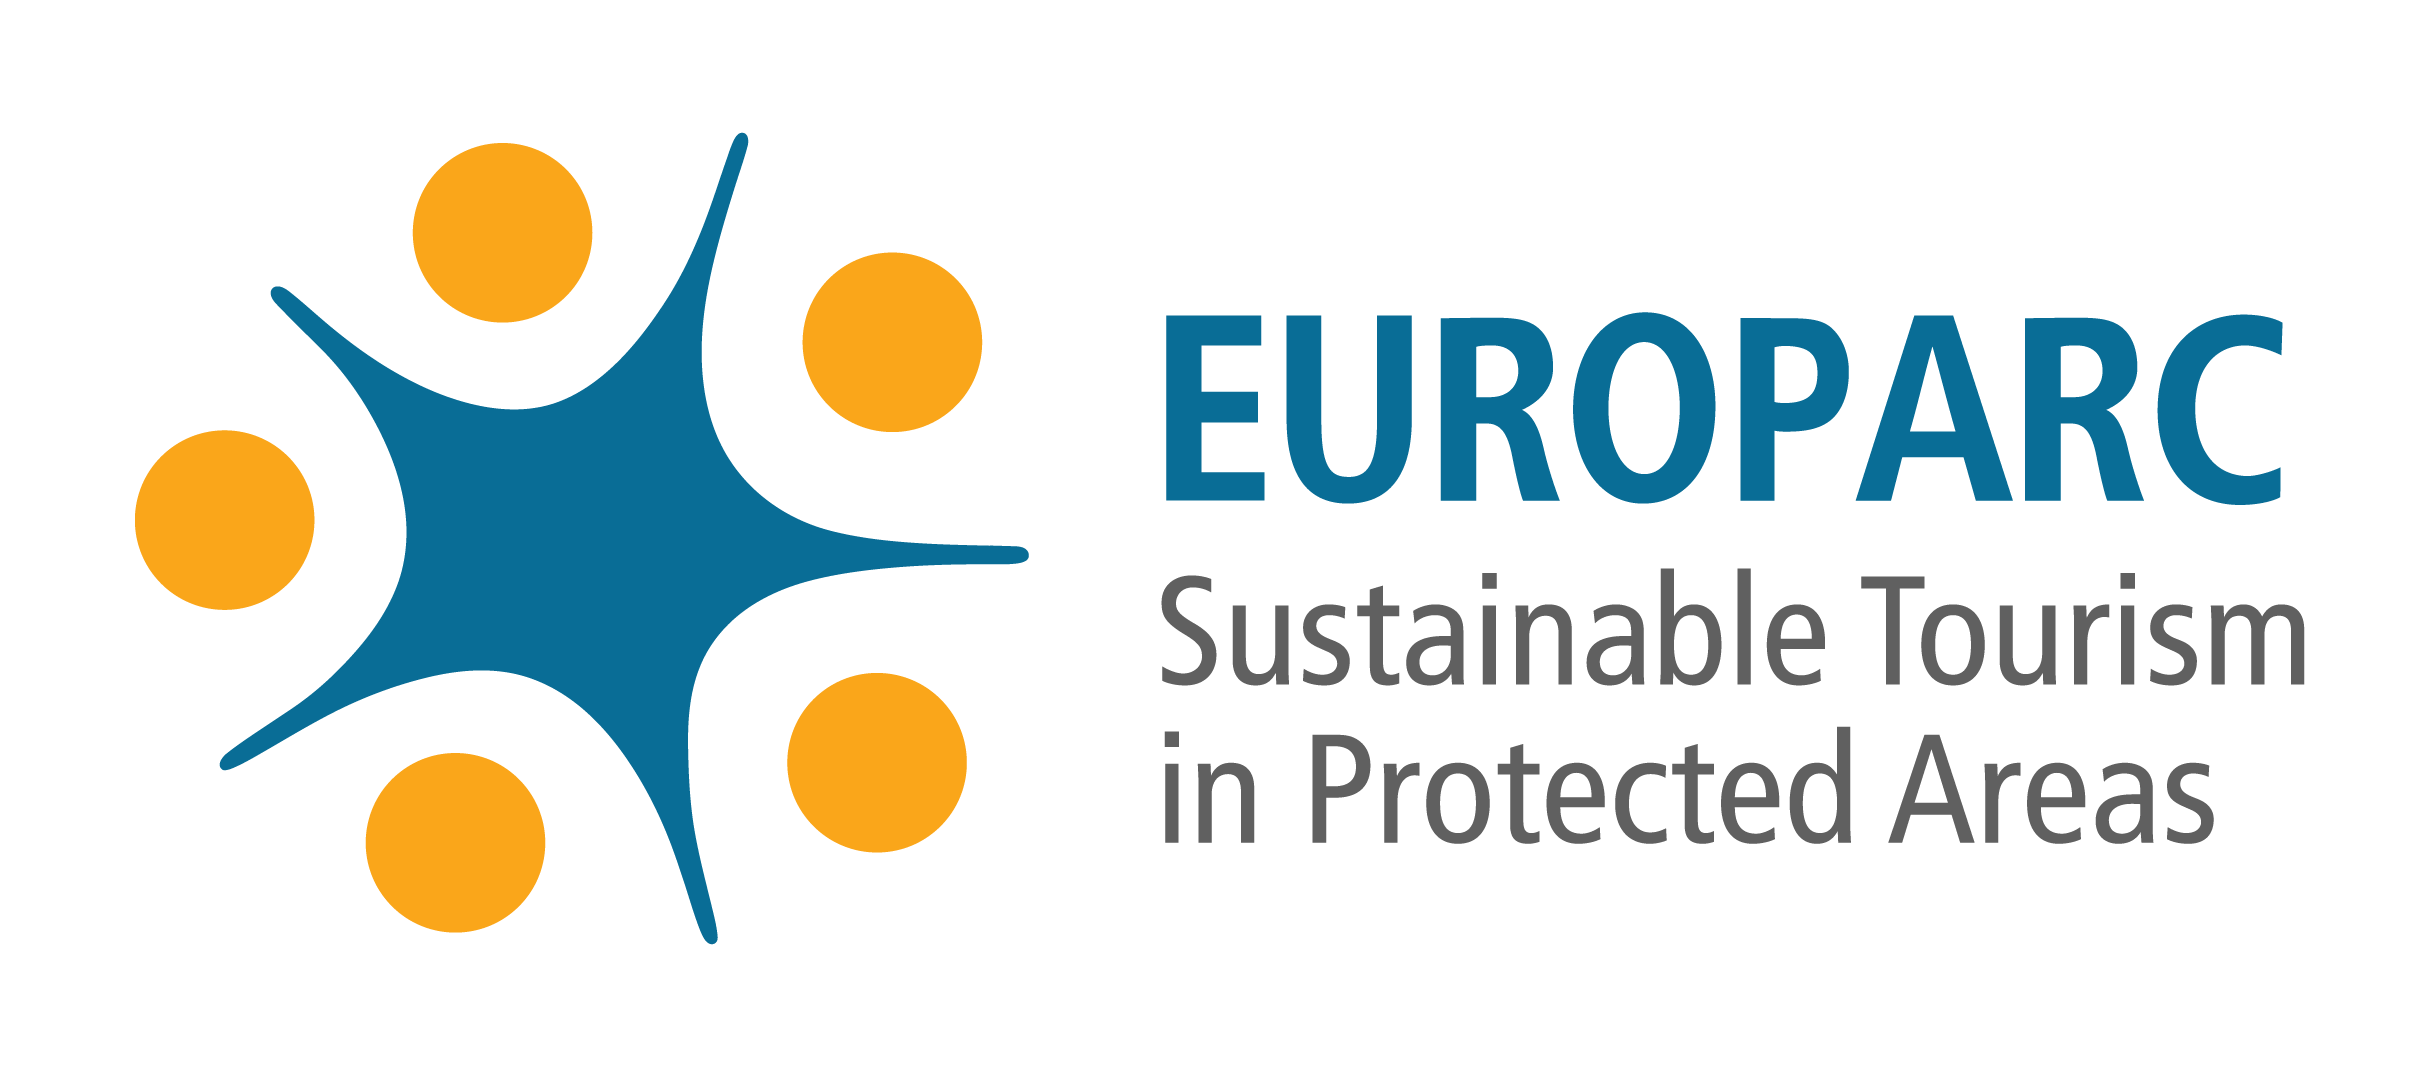 Blå fem-stjärneliknande figur i mitten omringad av fem gula cirklar och texten EUROPARC sustainable tourism in protected areas